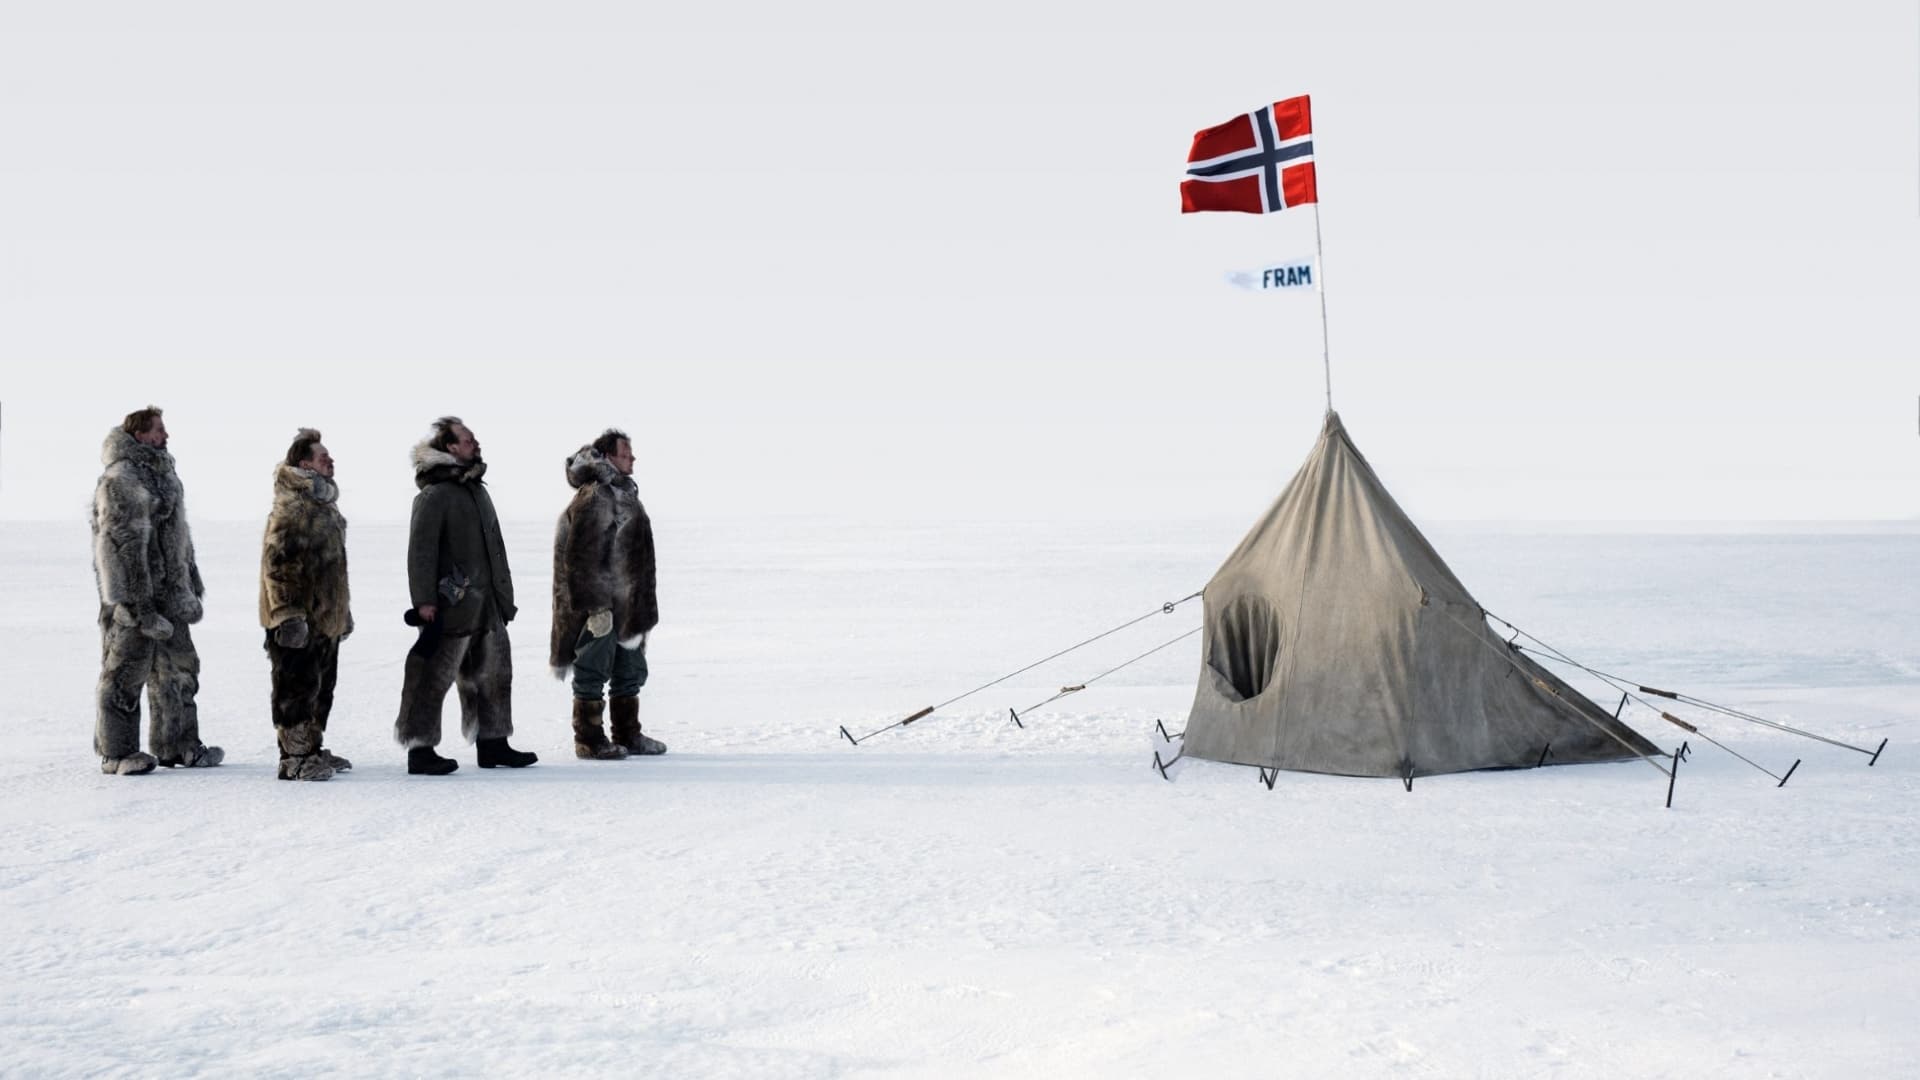 Amundsen 2019 123movies